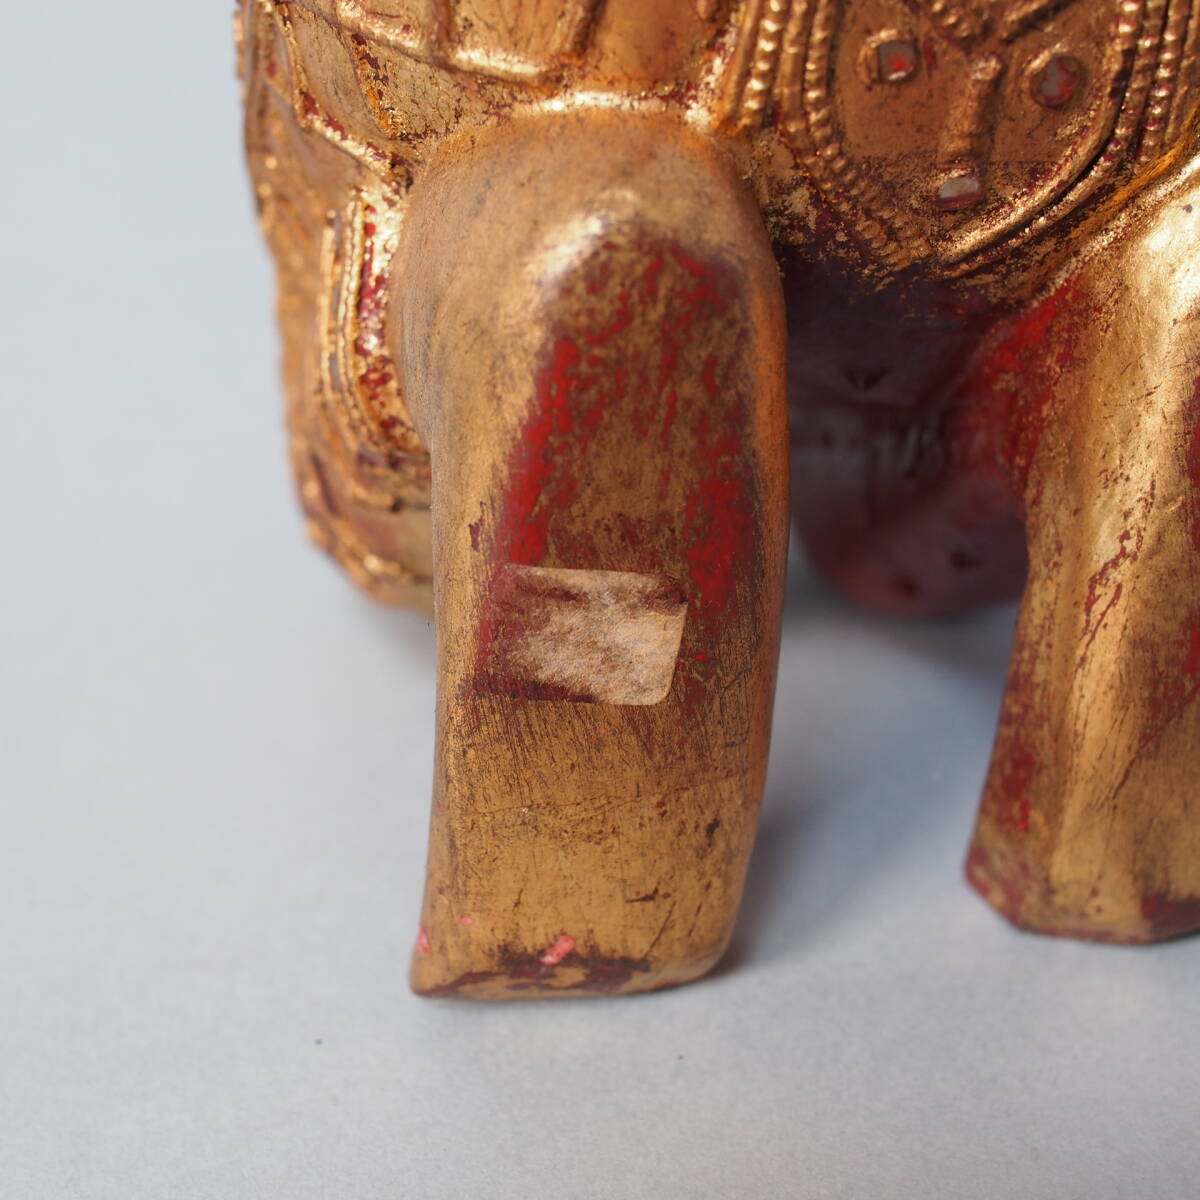 タイ 木製 仏像 テッパノム像 紅地 金塗 高さcm アンコールワット サワディ 木彫 仏教美術 密教 アユタヤ B5_画像7